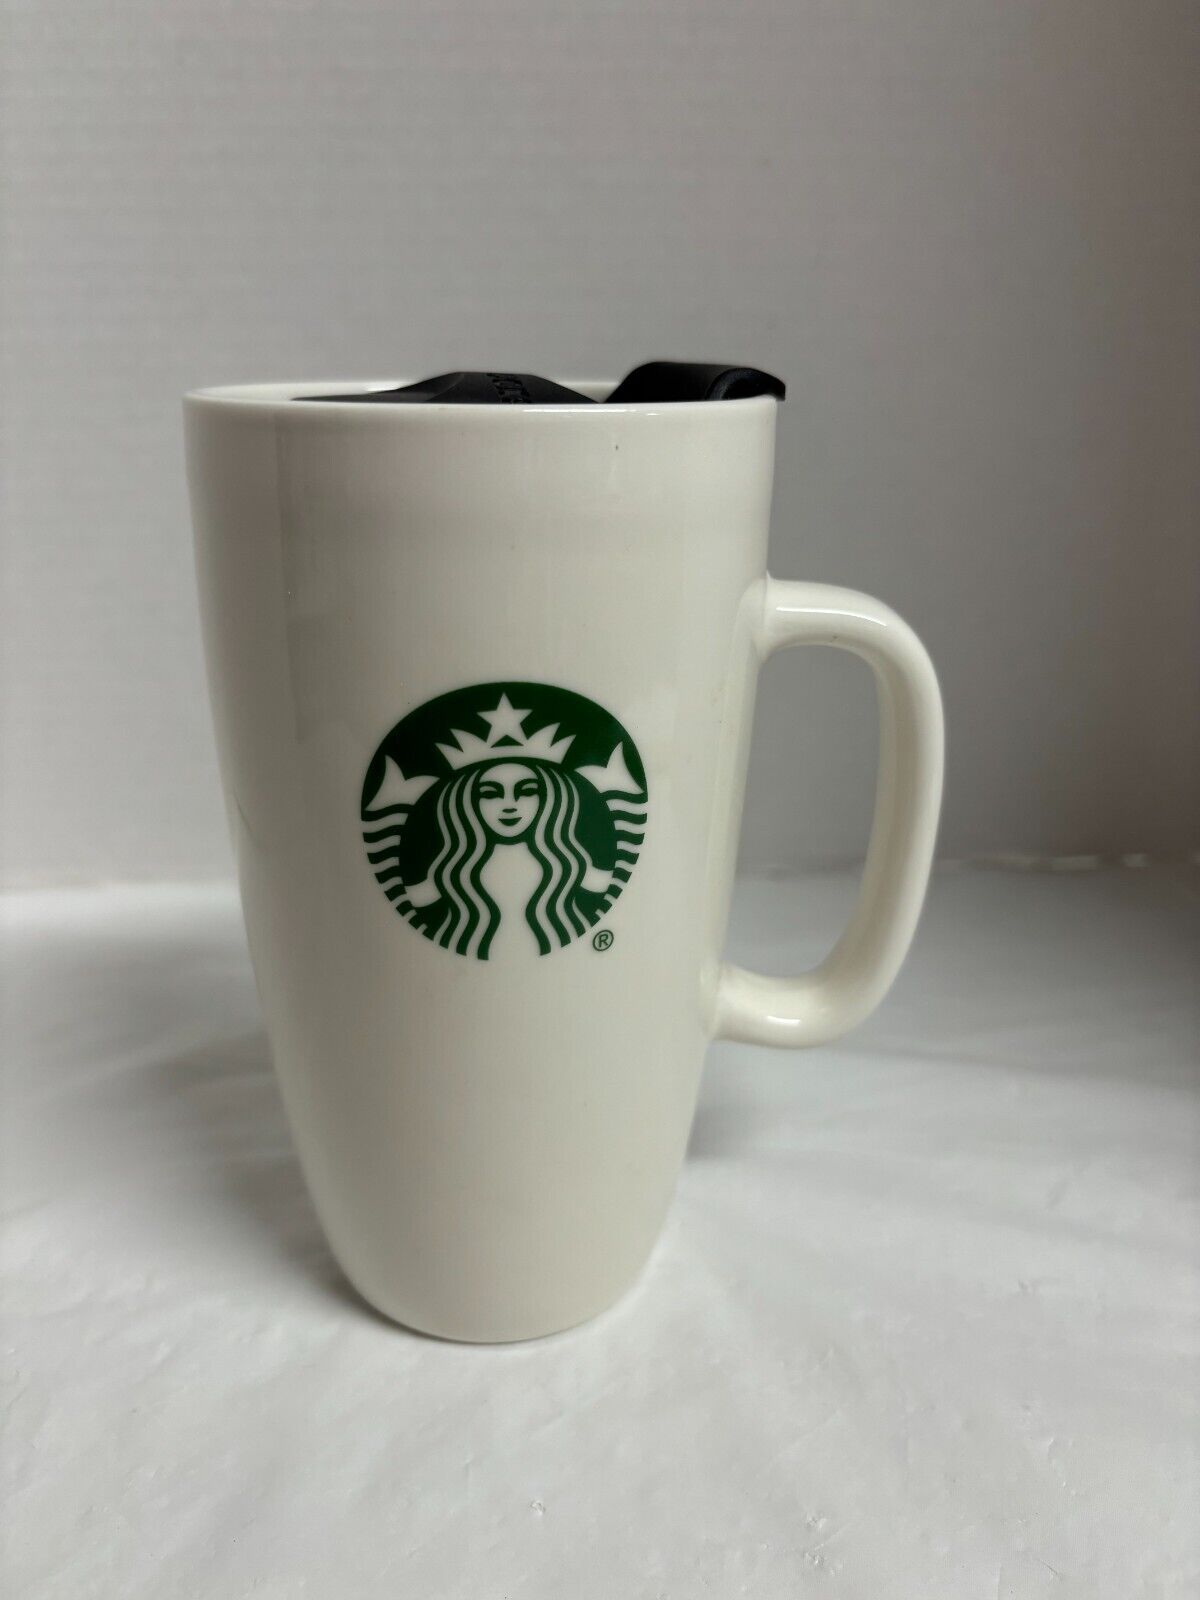 Starbucks White Ceramic Coffee Travel Mug & Lid 16oz Tall Mermaid Logo